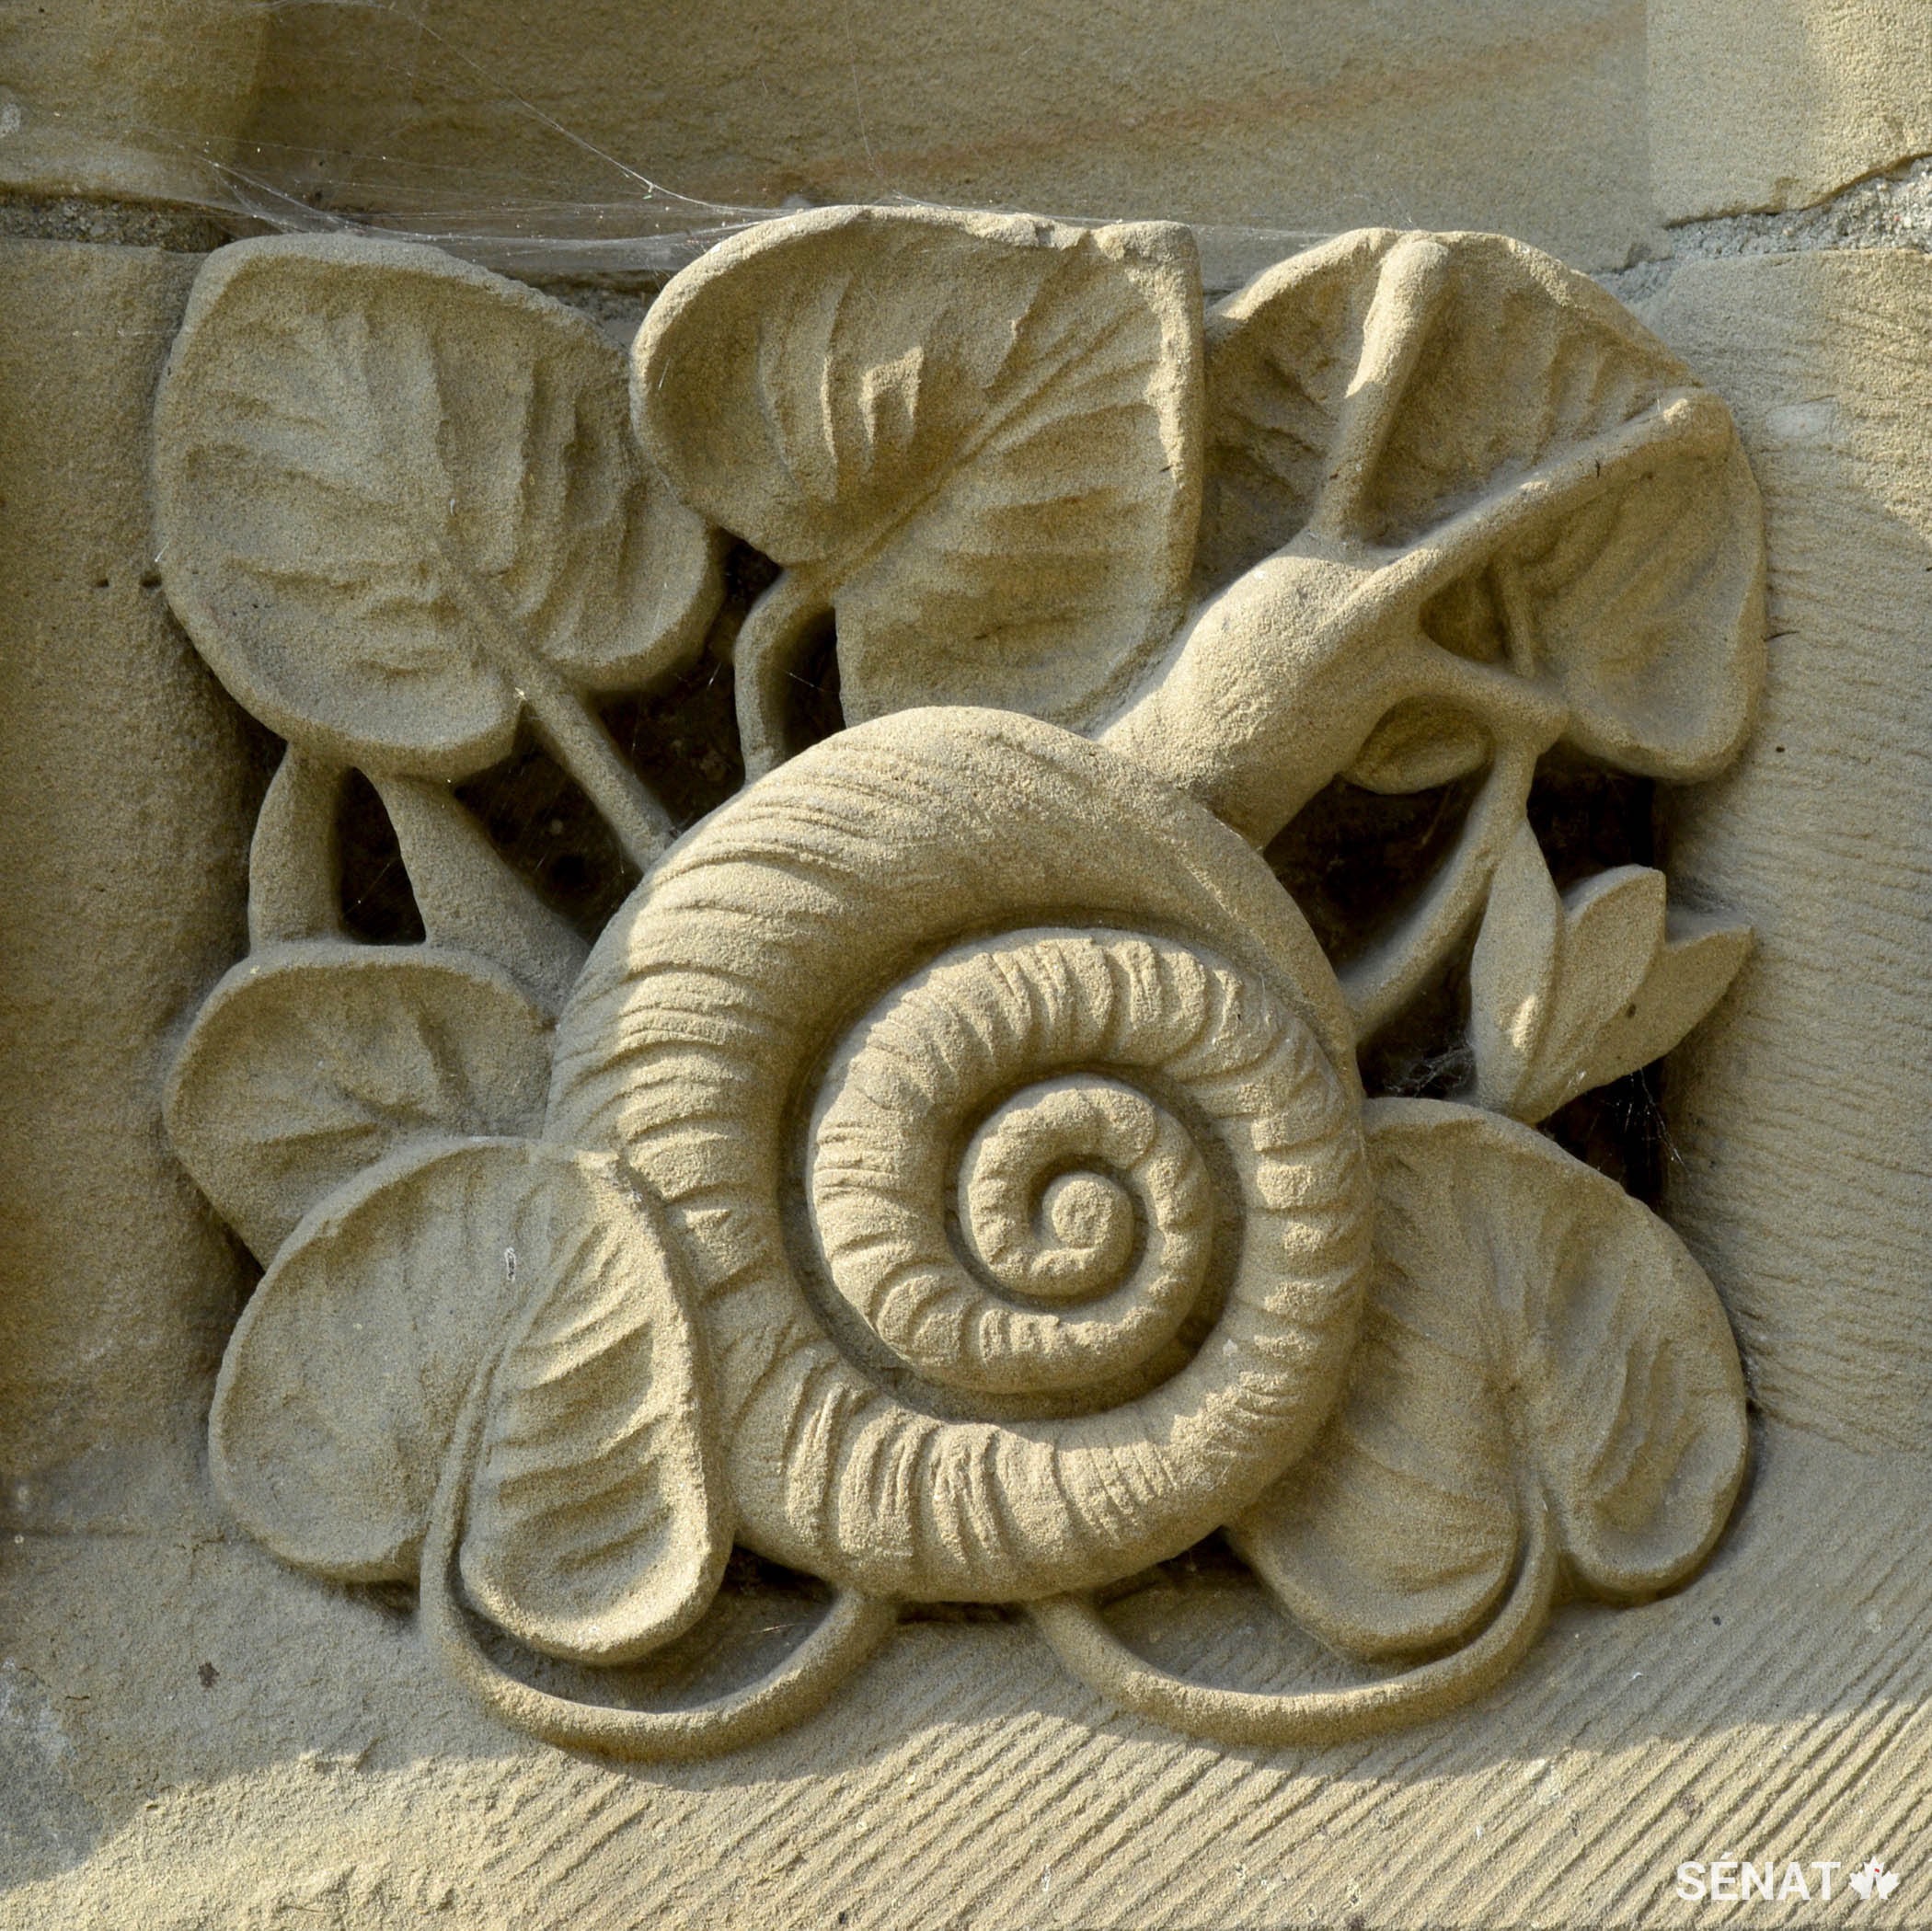 Un bas-relief qui illustre un escargot orne la base de la Tour de la Paix.